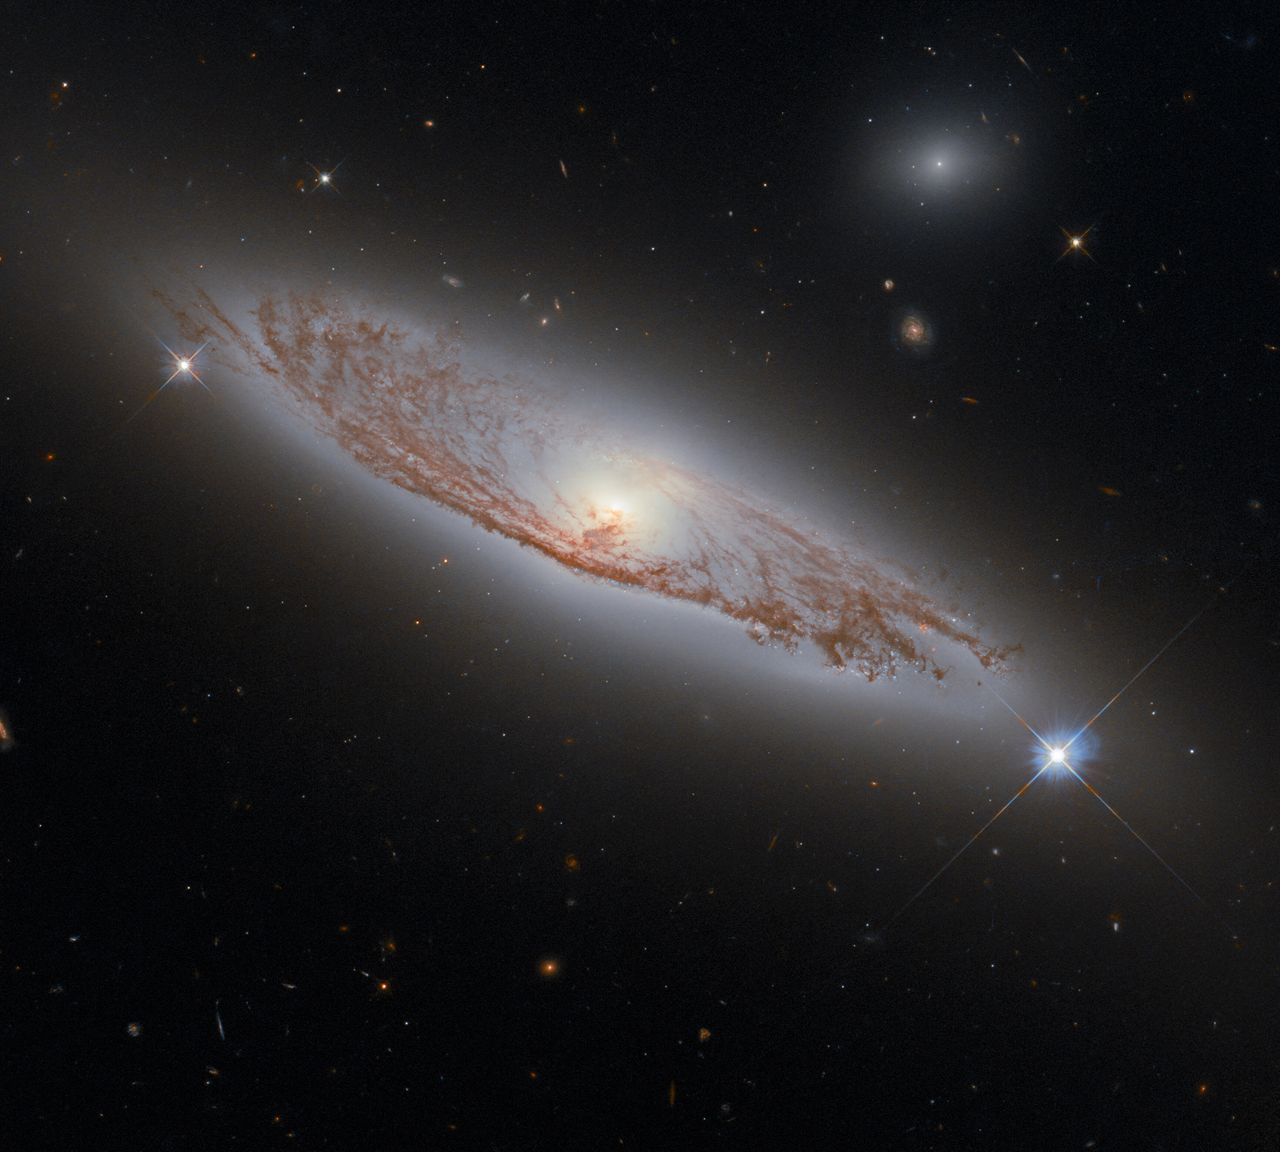 Jest oddalona o 150 milionów lat świetlnych. Teleskop Hubble’a ujął piękną galaktykę